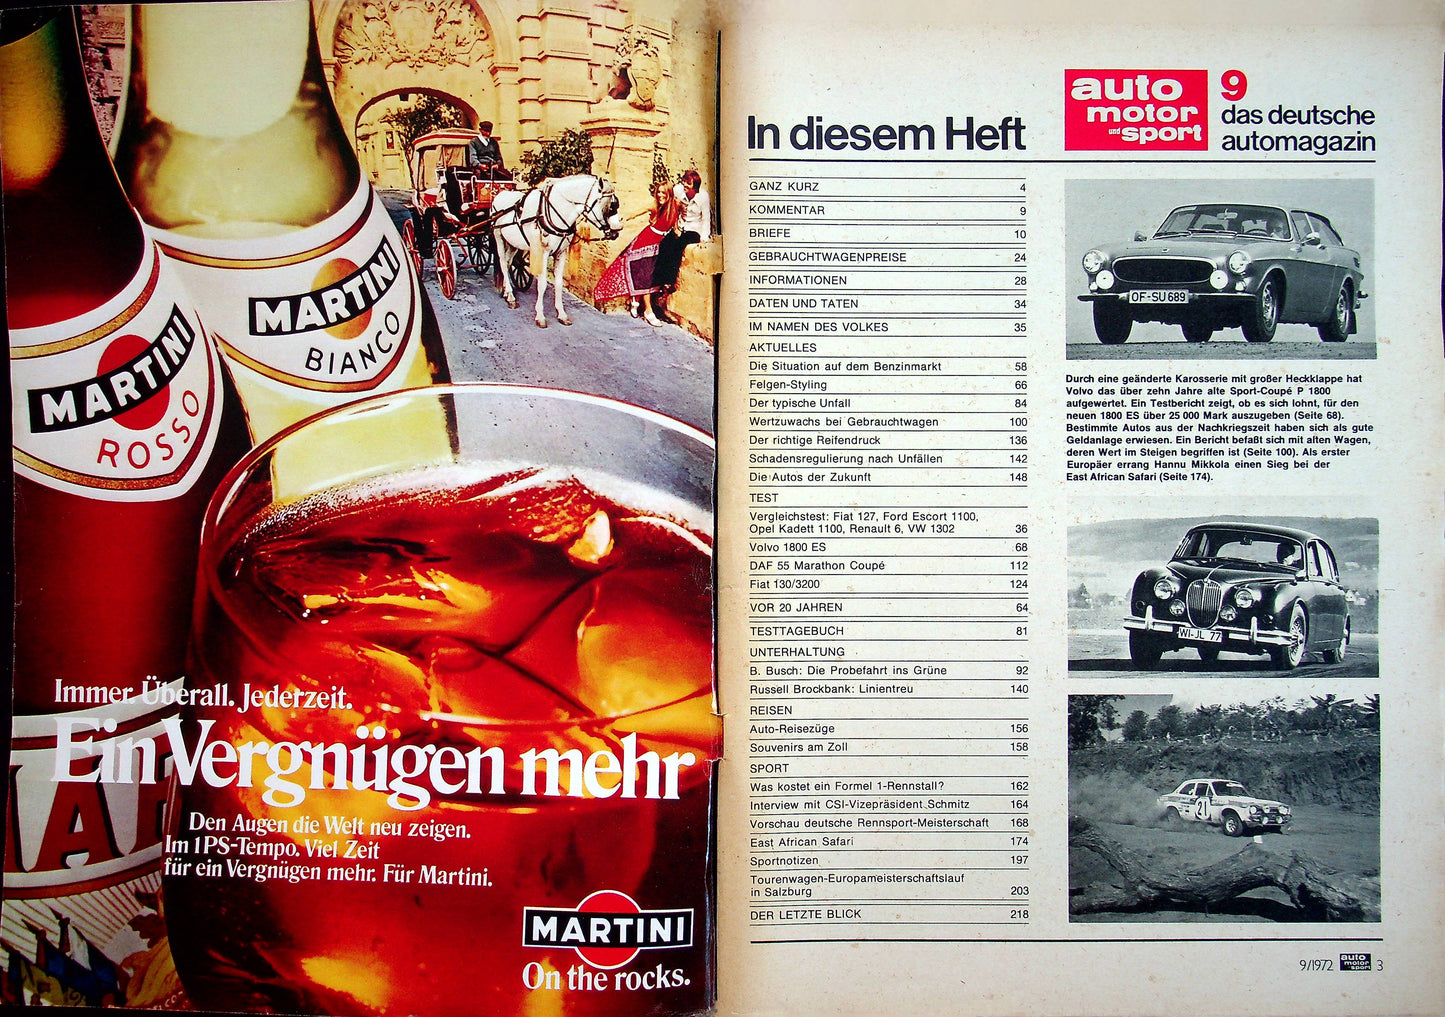 Auto Motor und Sport 09/1972